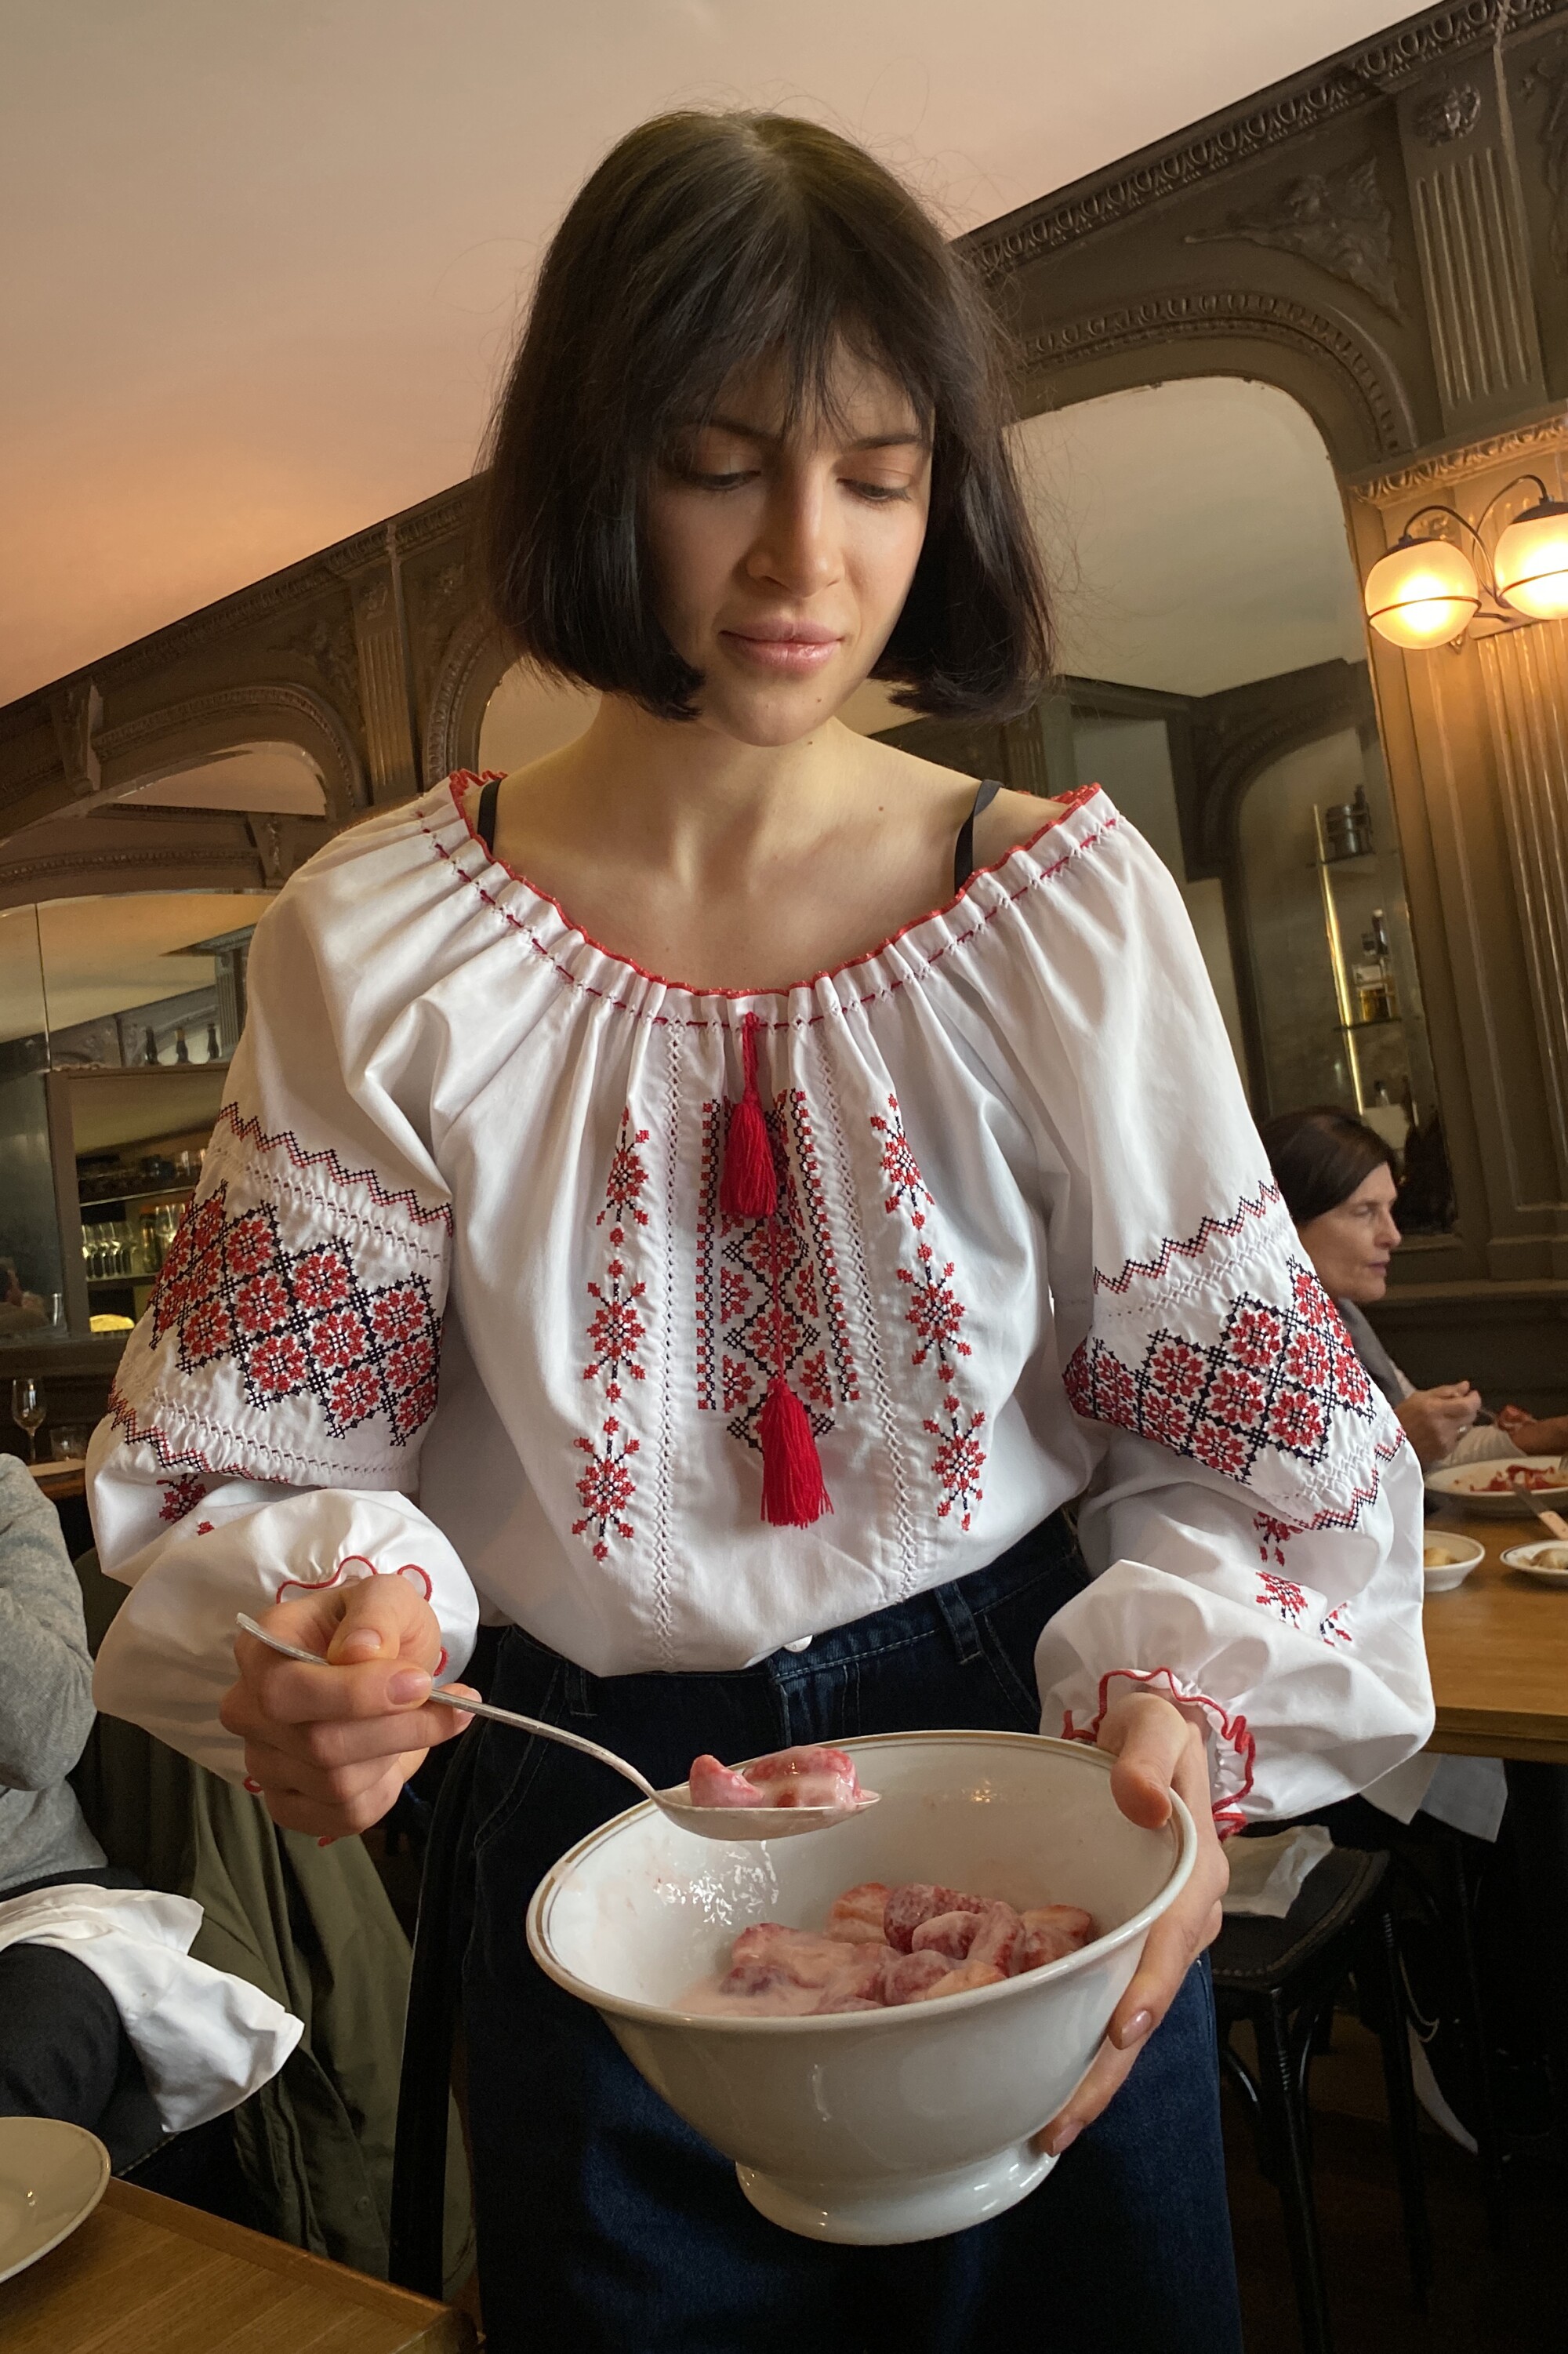 Alina Prokopenko serves a meal: